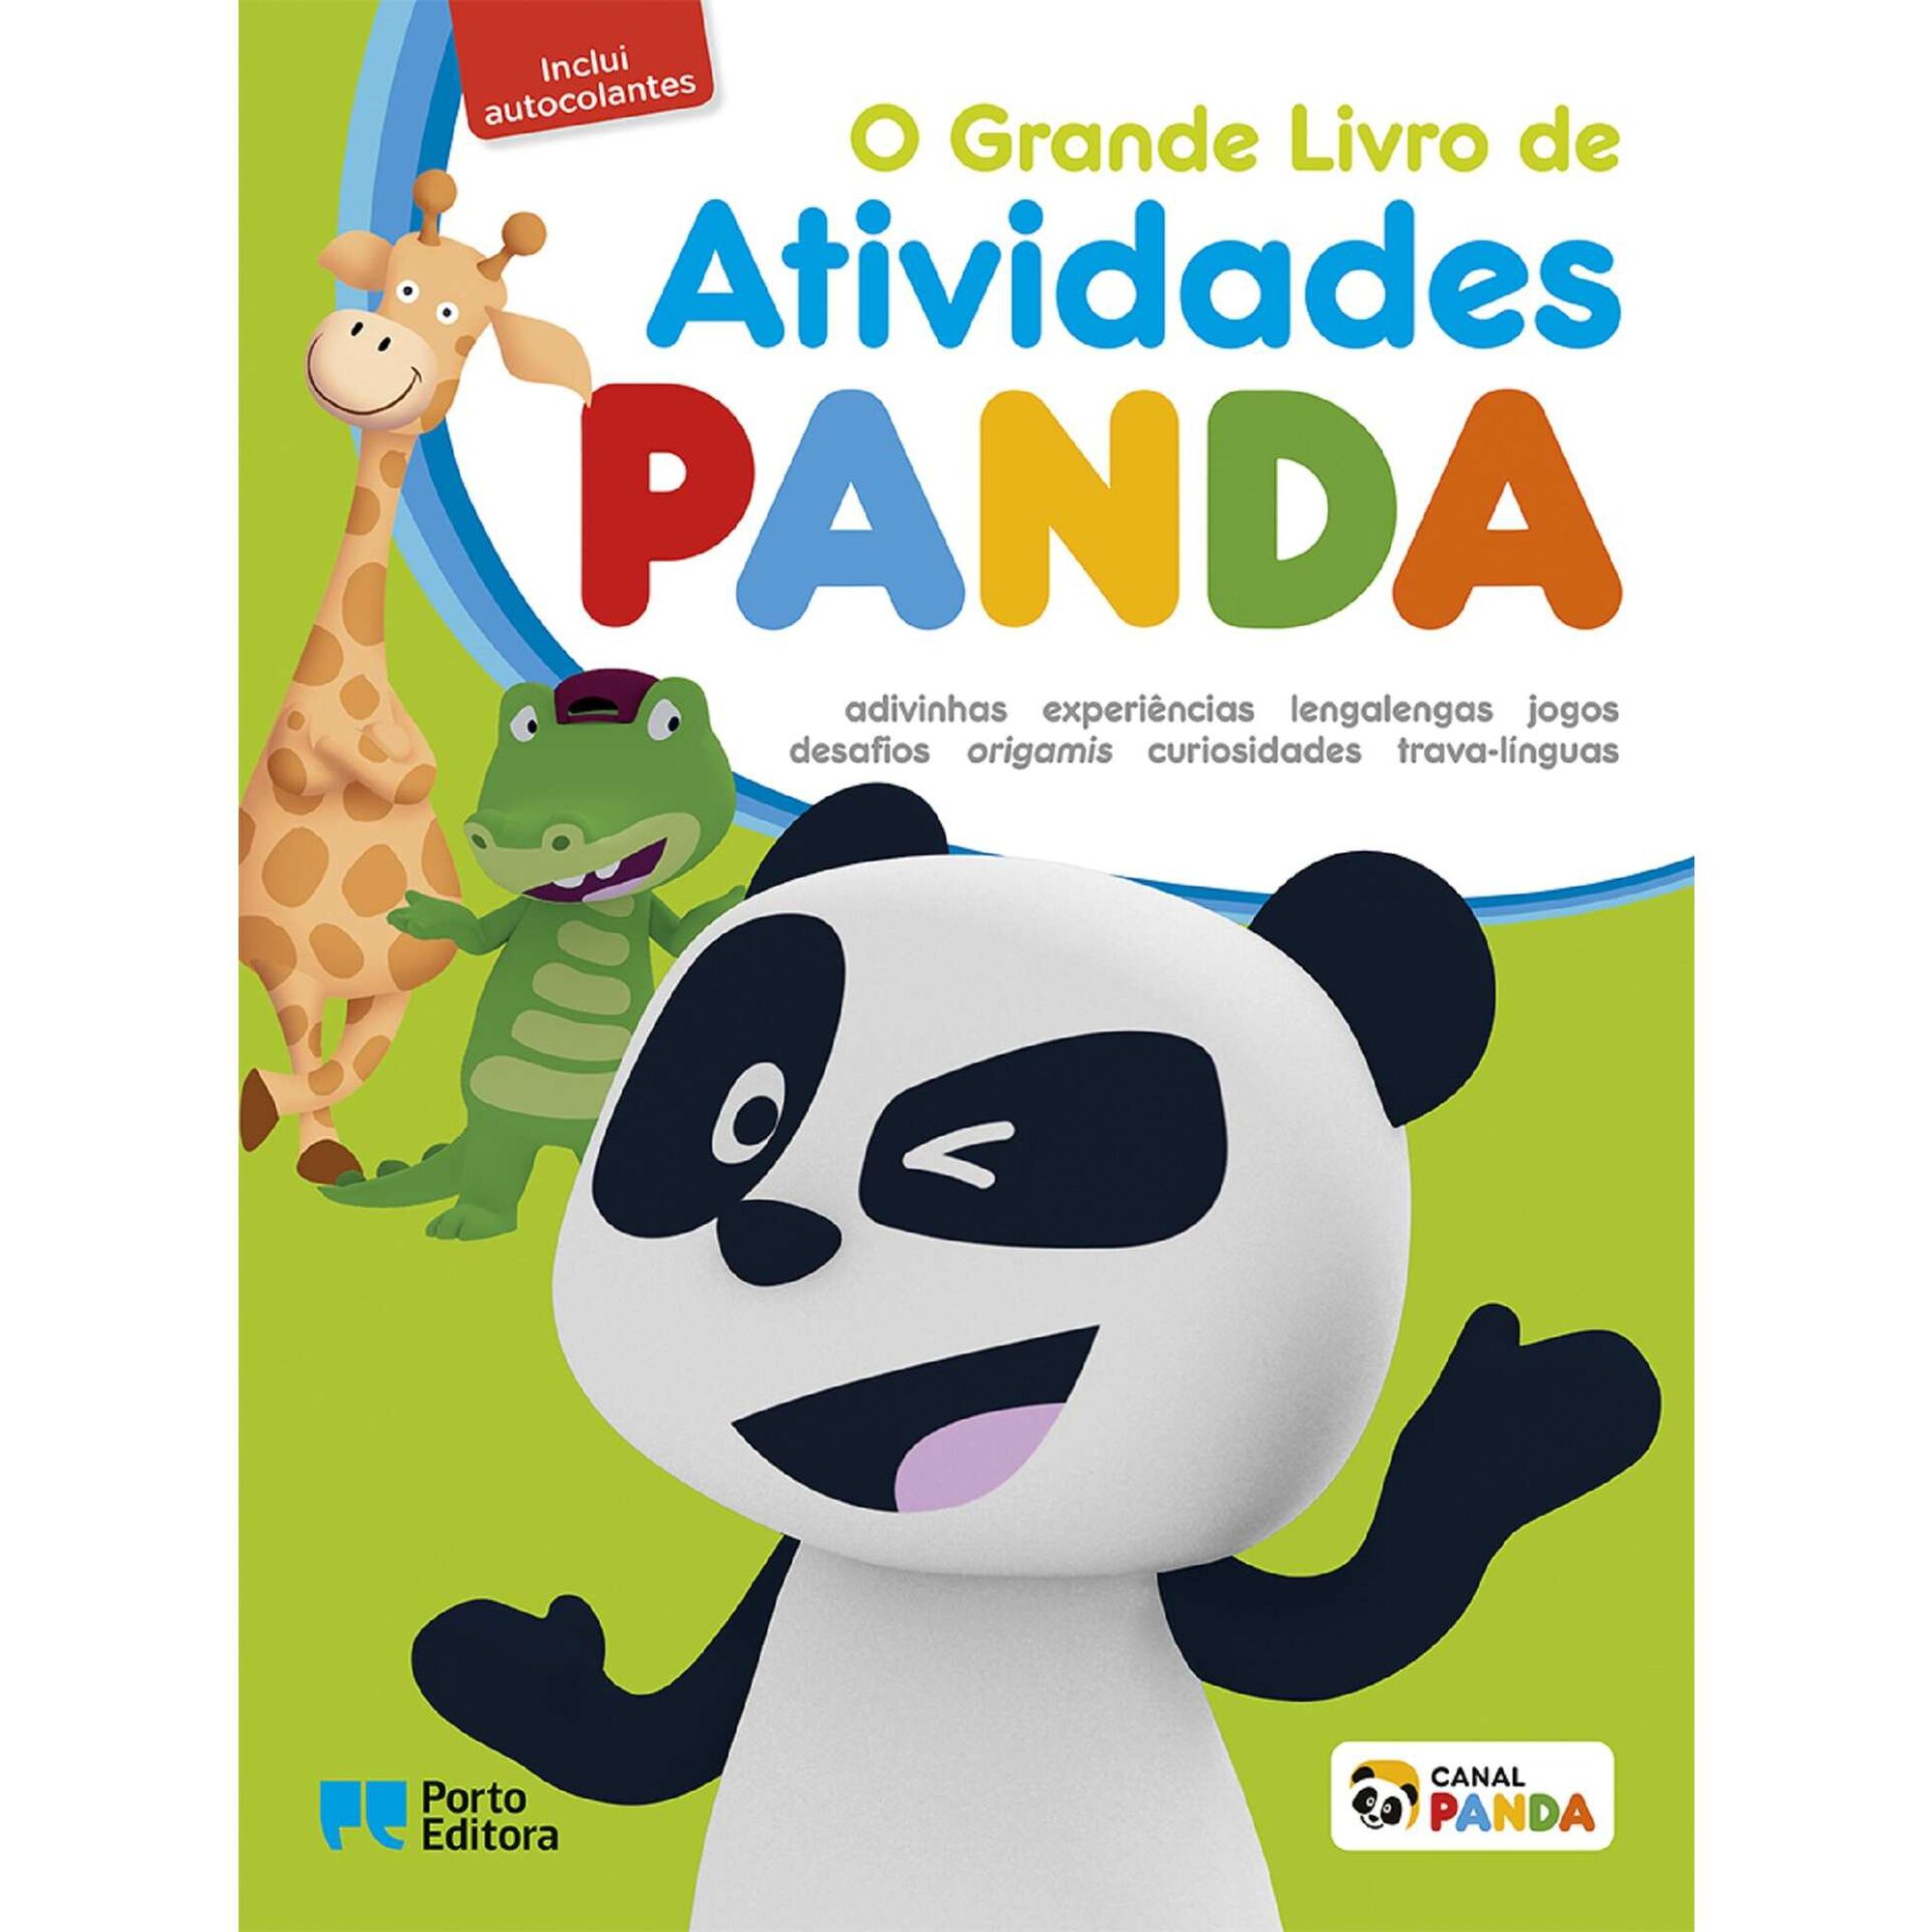 O Grande Livro de Atividades Panda